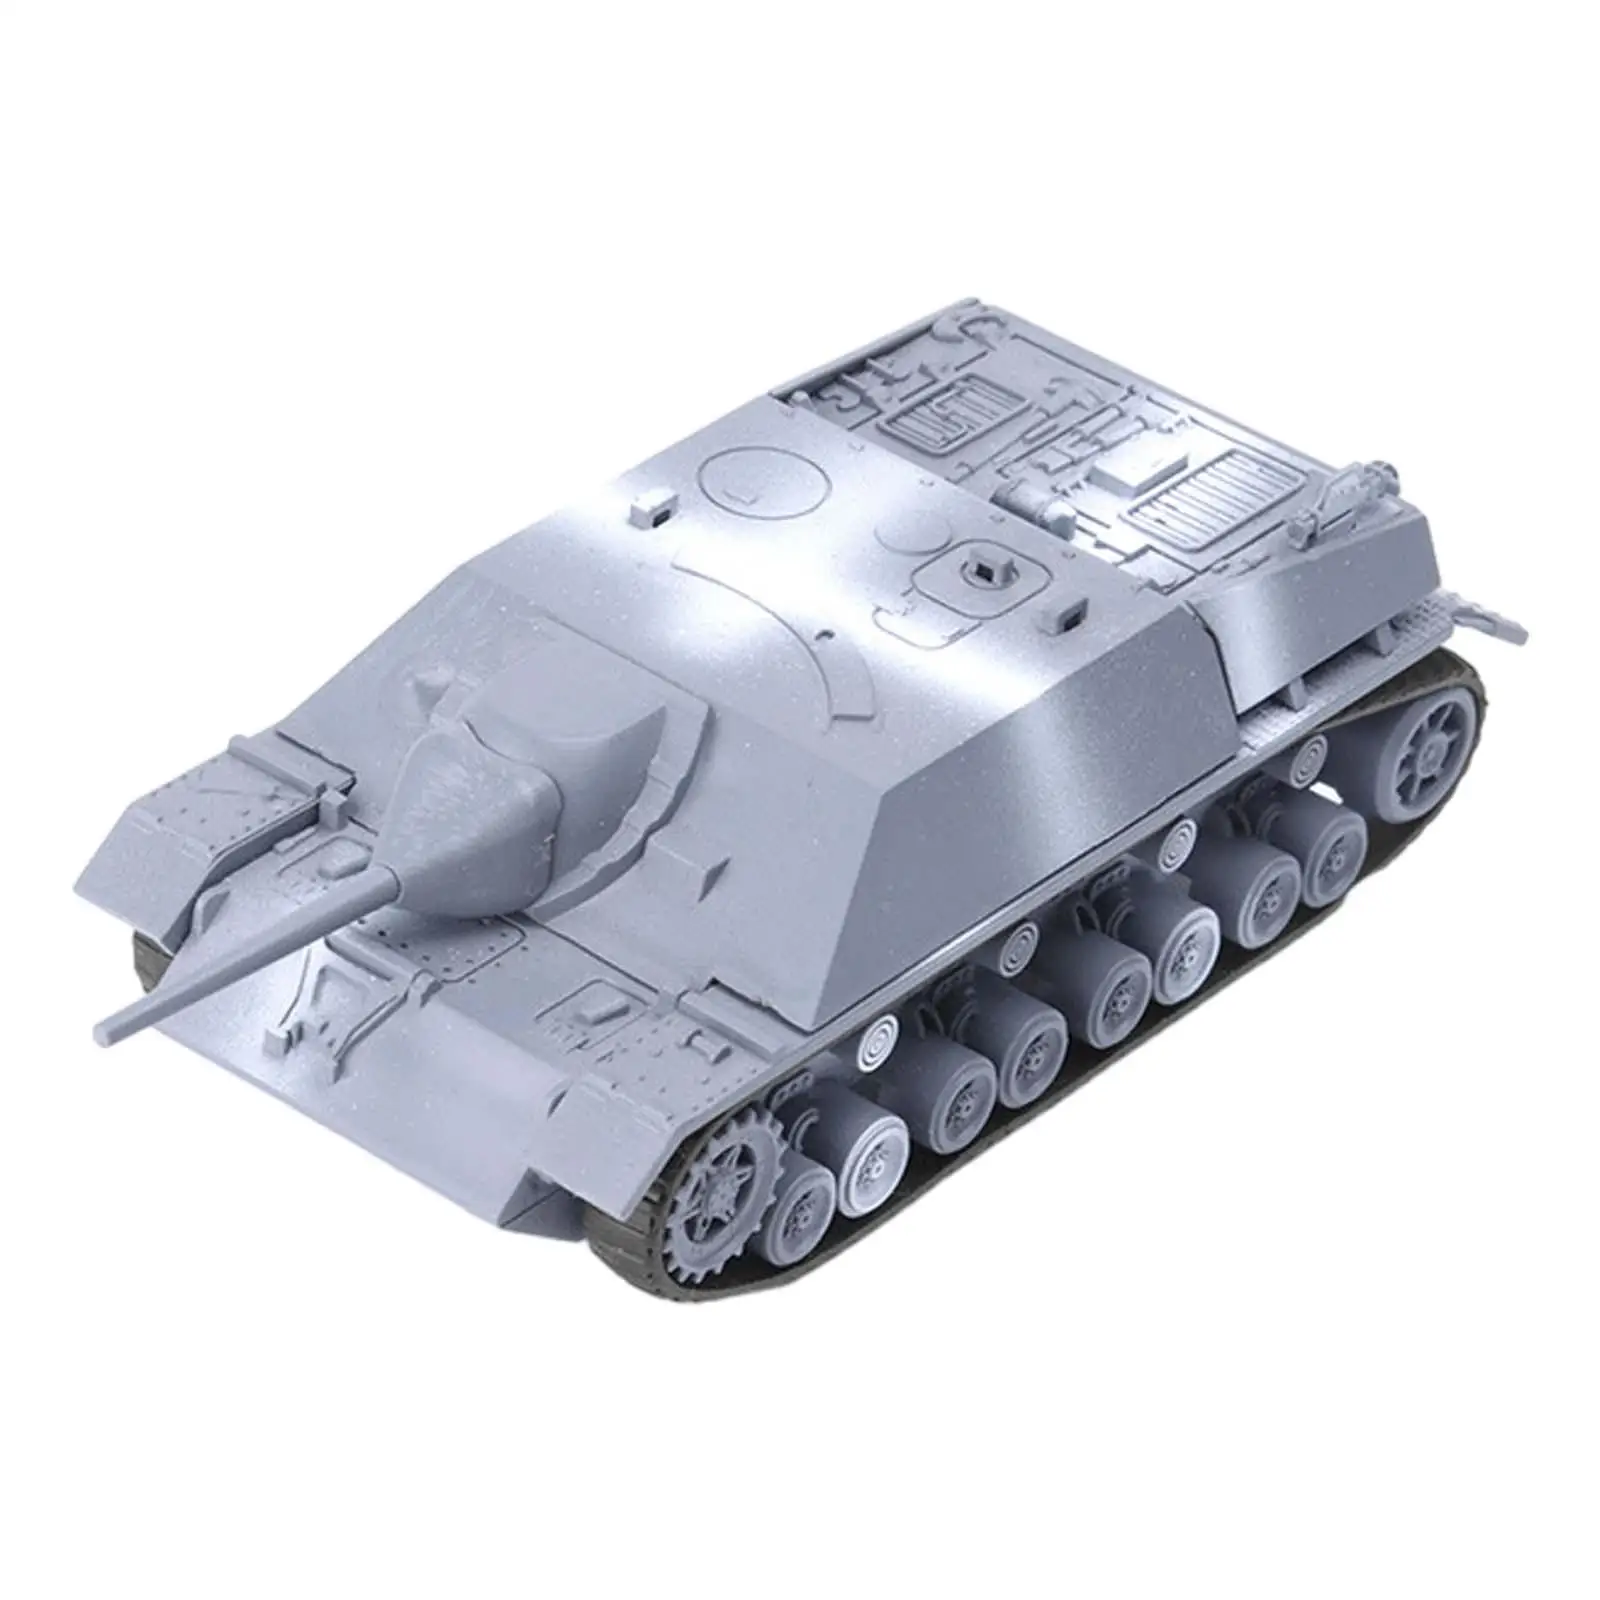 Сборные модели танков из пластика